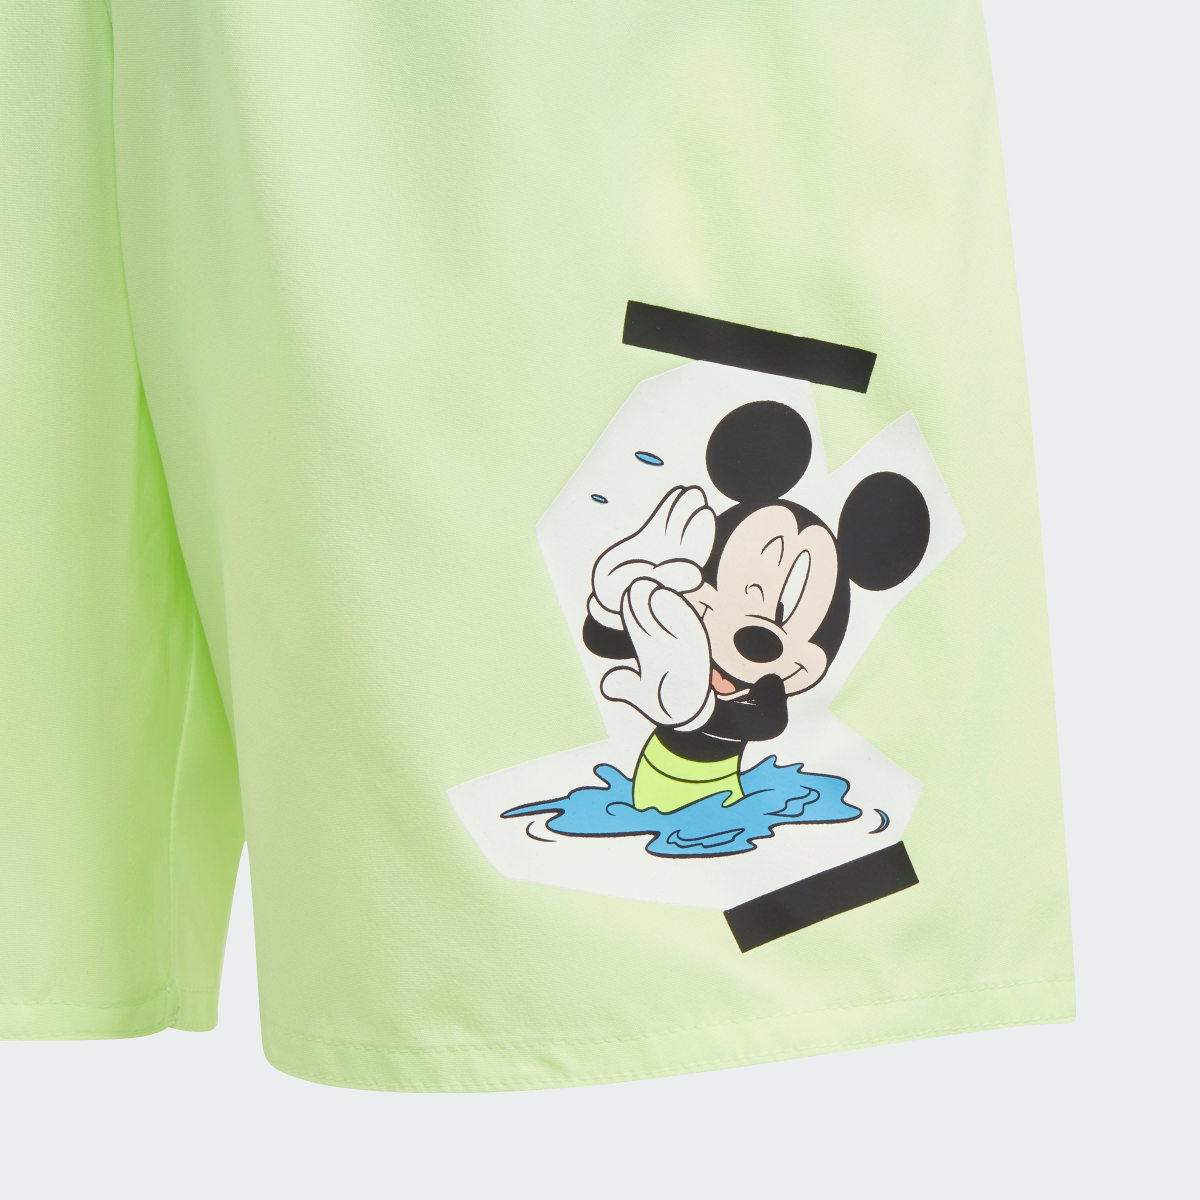 Adidas Calções de Natação Mickey Vacation Memories adidas x Disney. 4